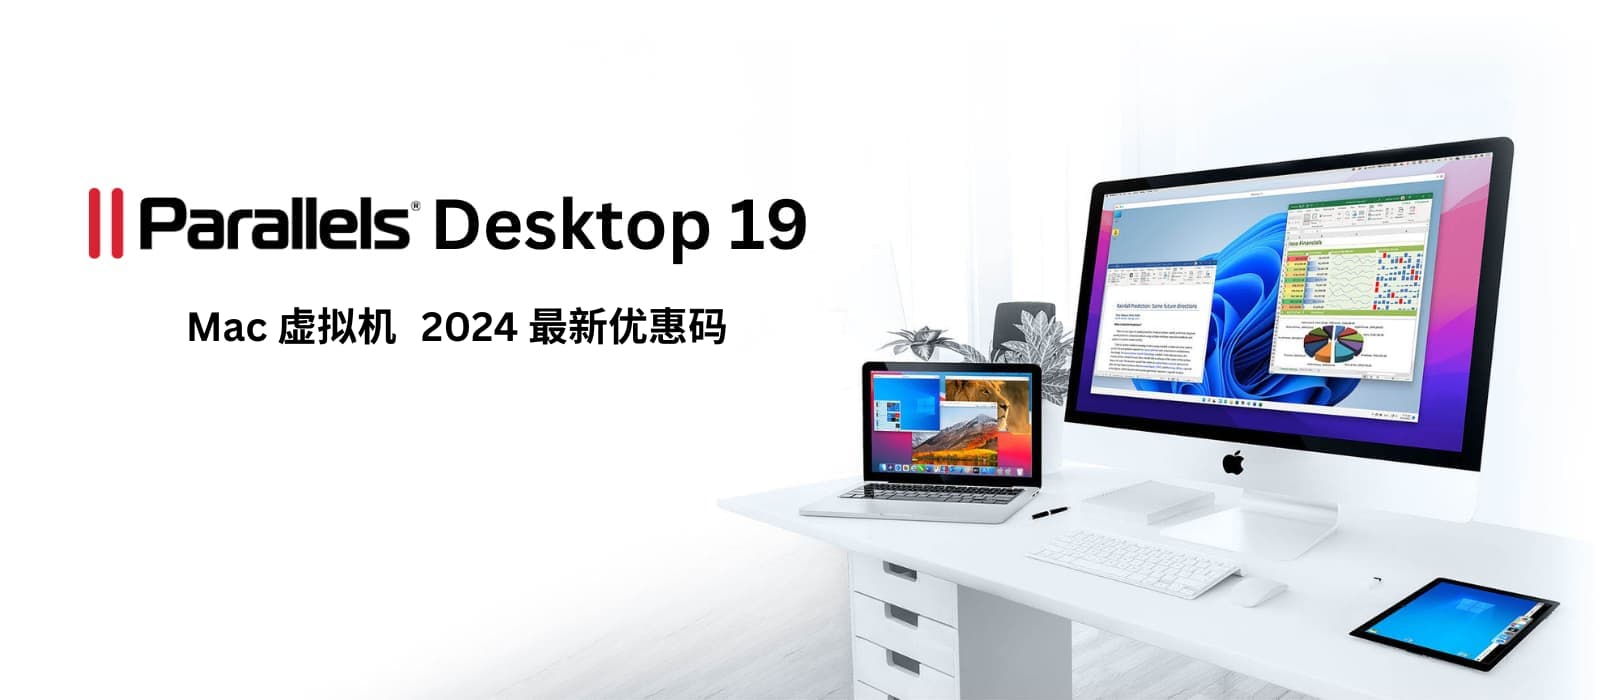 Parallels Desktop 19 - macOS 虚拟机工具，2024春季 8 折限时优惠[截止2024年5月1日] 13